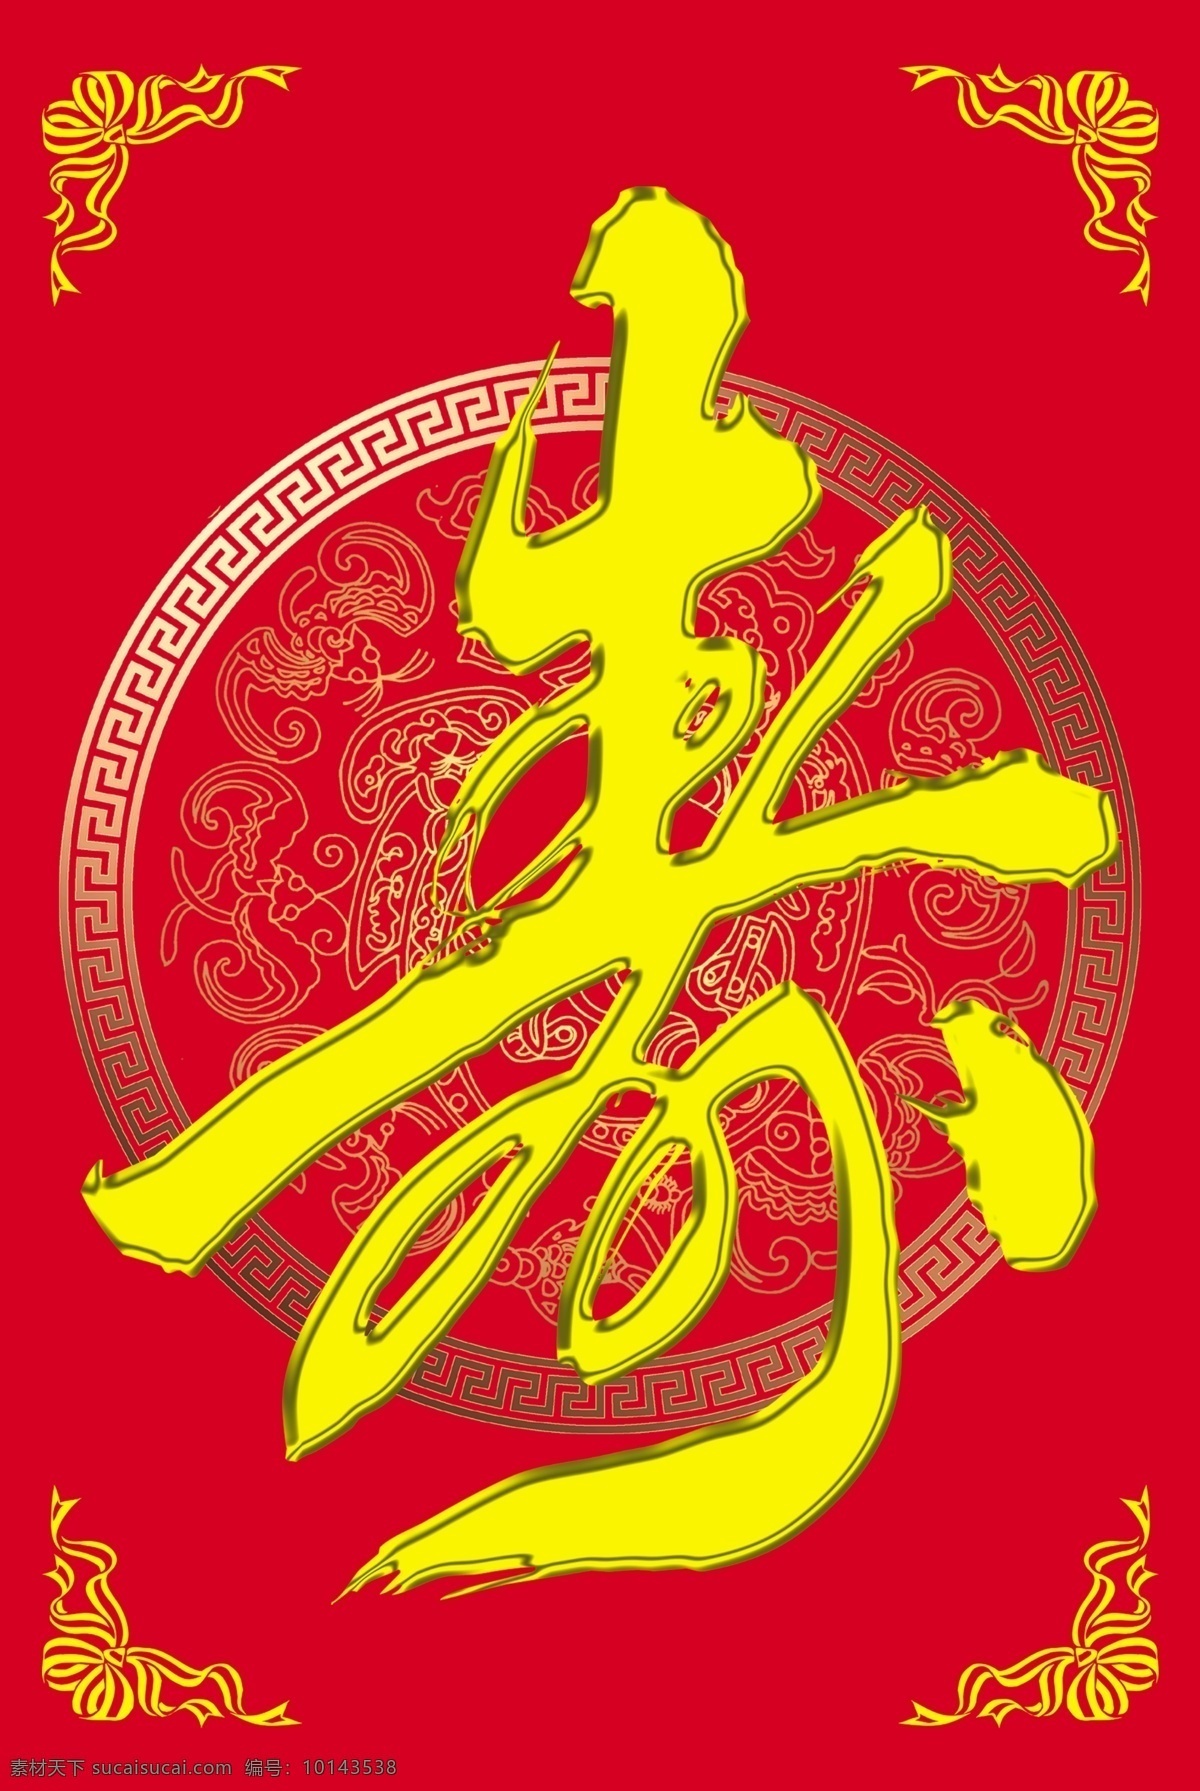 寿字 生日 喜庆 酒席 农村 日常生活 logo设计